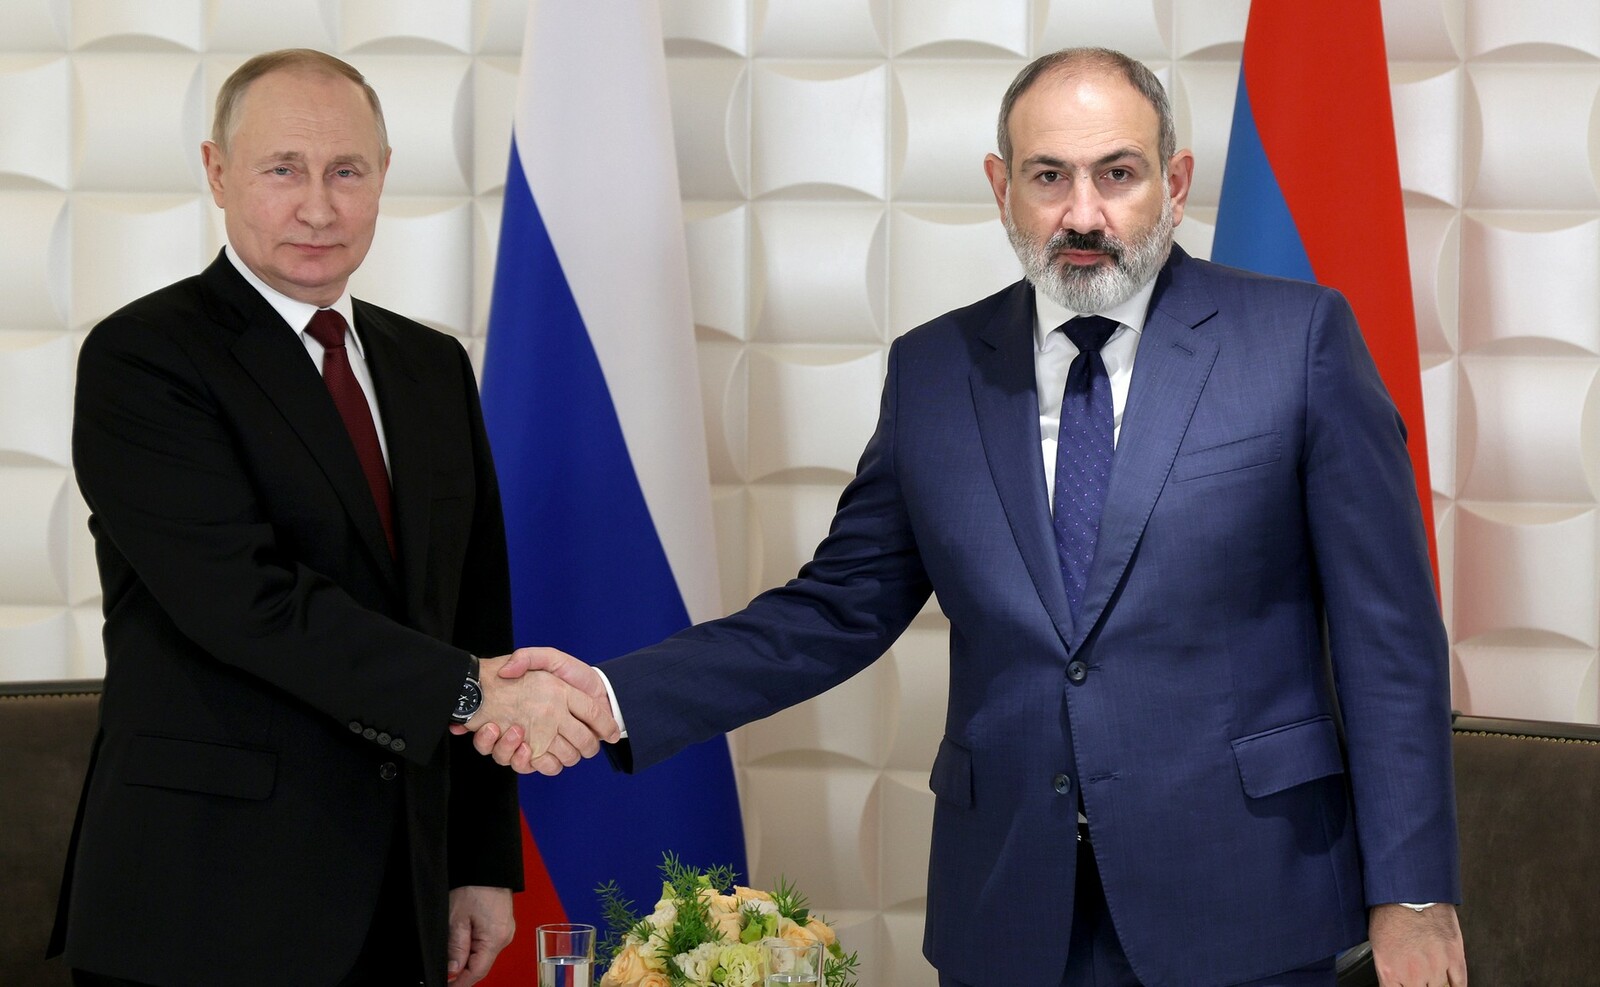 Встреча с Премьер-министром Армении Николом Пашиняном